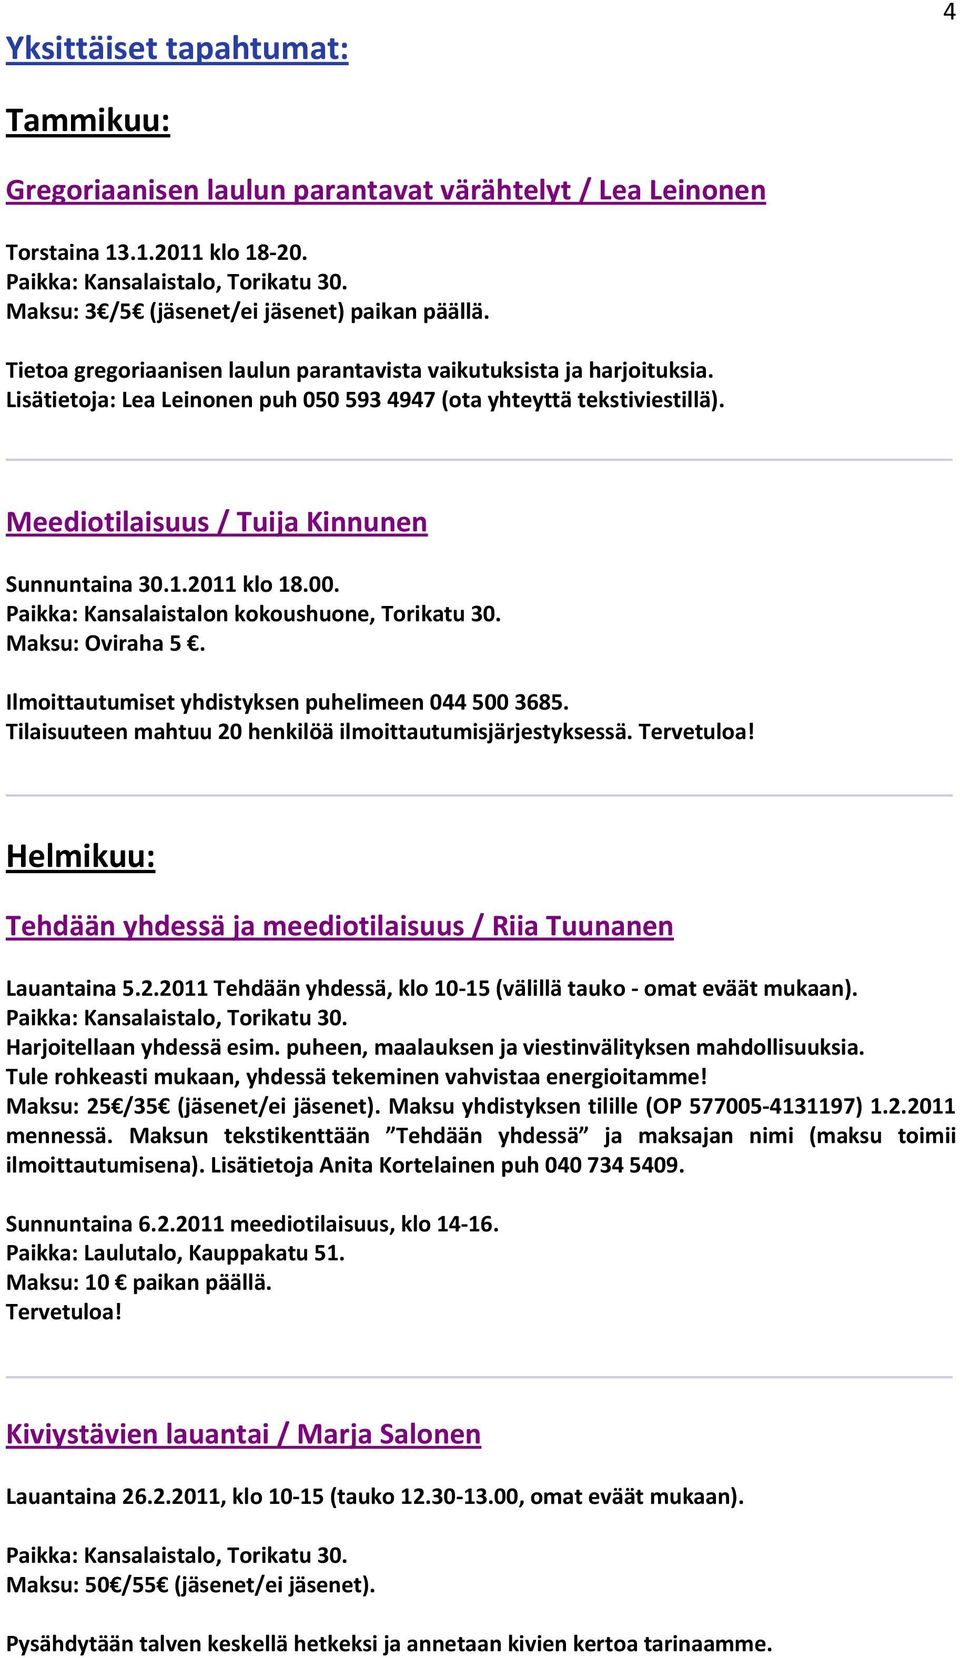 2011 klo 18.00. Paikka: Kansalaistalon kokoushuone, Torikatu 30. Maksu: Oviraha 5. Ilmoittautumiset yhdistyksen puhelimeen 044 500 3685. Tilaisuuteen mahtuu 20 henkilöä ilmoittautumisjärjestyksessä.